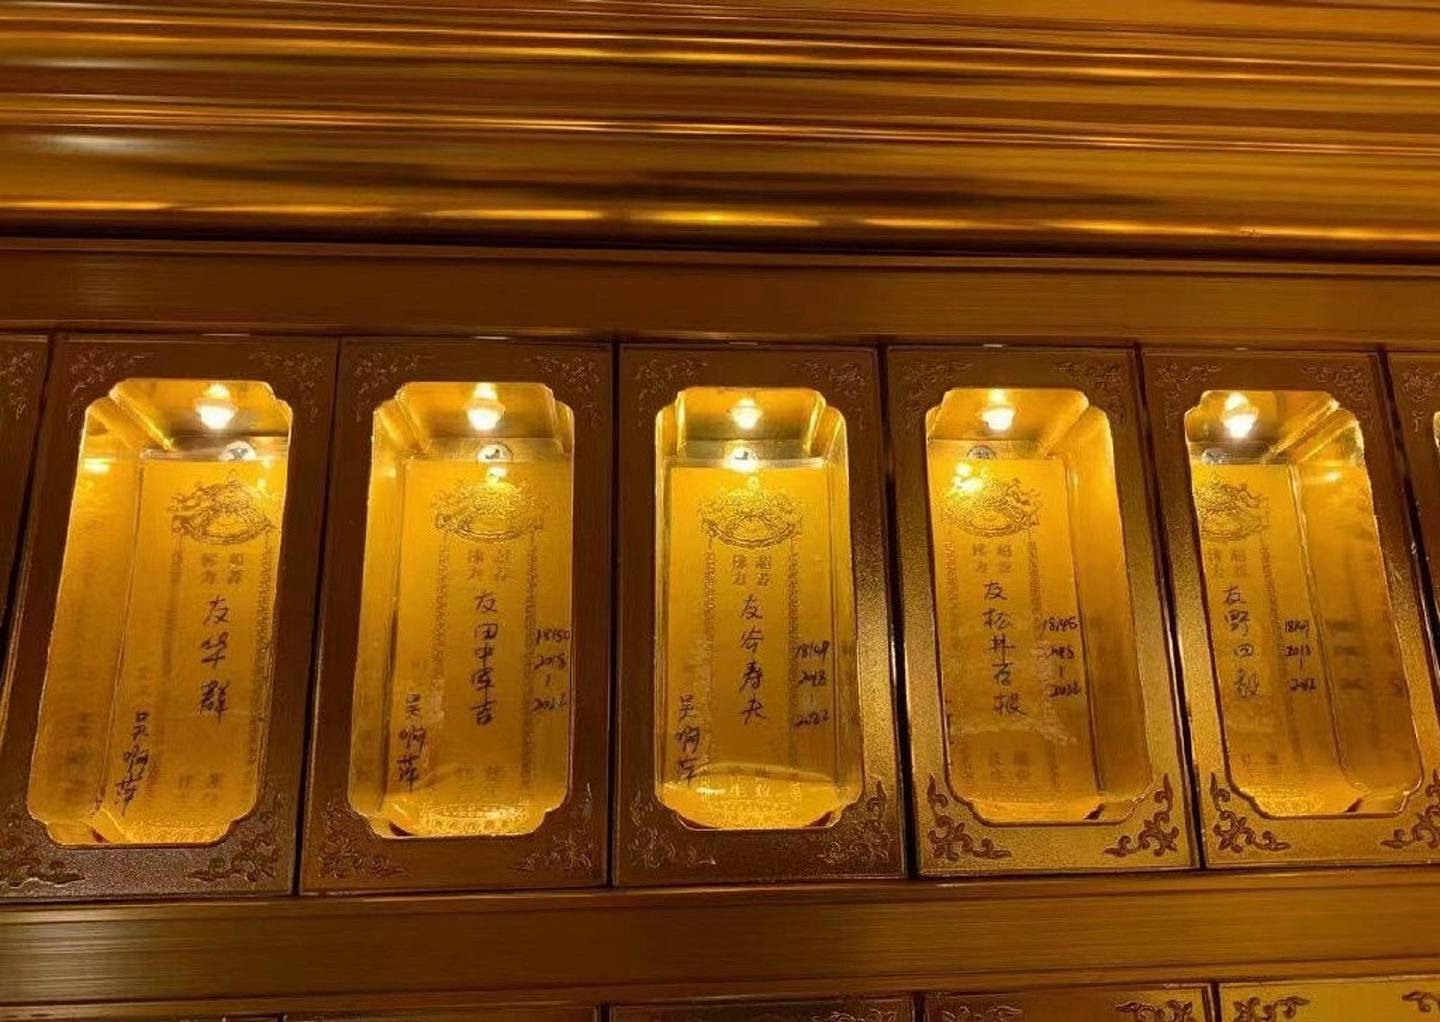 内地网民发现玄奘寺供奉四个南京大屠杀战犯的牌位。 (微博)